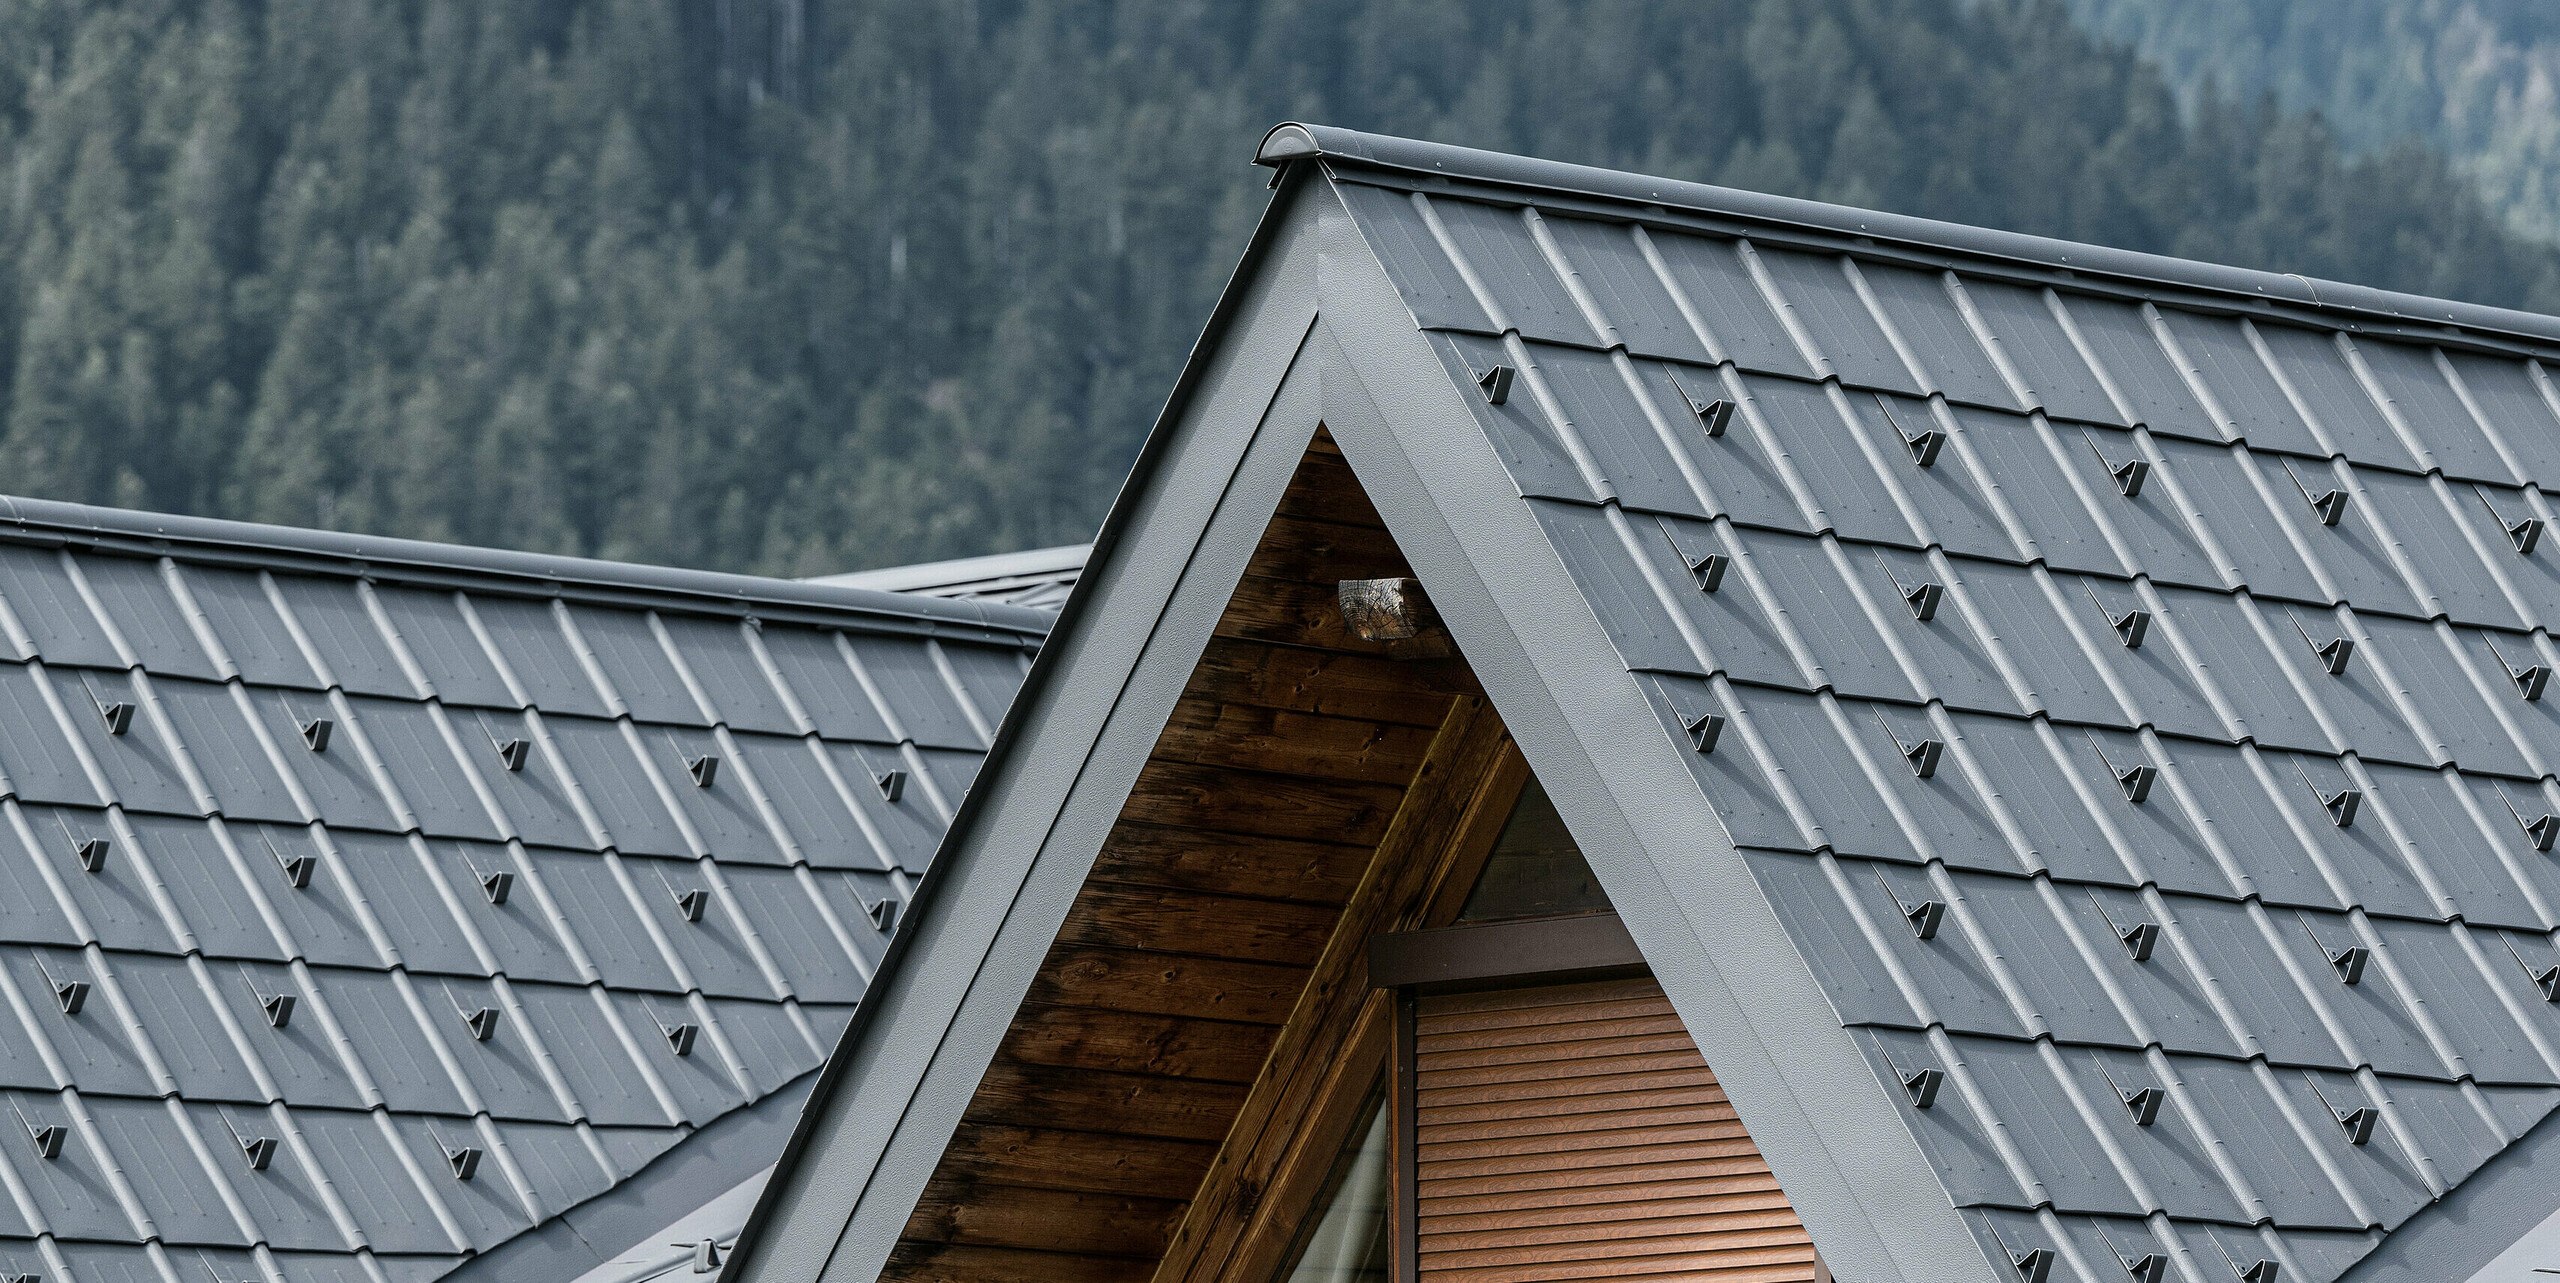 Detailní záběr na vikýř na alpském domě v Auronzo di Cadore, vybavený falcovanými taškami PREFA ve světle šedé barvě. Jemně strukturované hliníkové panely krásně kontrastují s přírodním dřevem střešní konstrukce a nabízejí vysoce kvalitní ochranu před alpským počasím a zároveň se hladce začleňují do horské lesní krajiny.